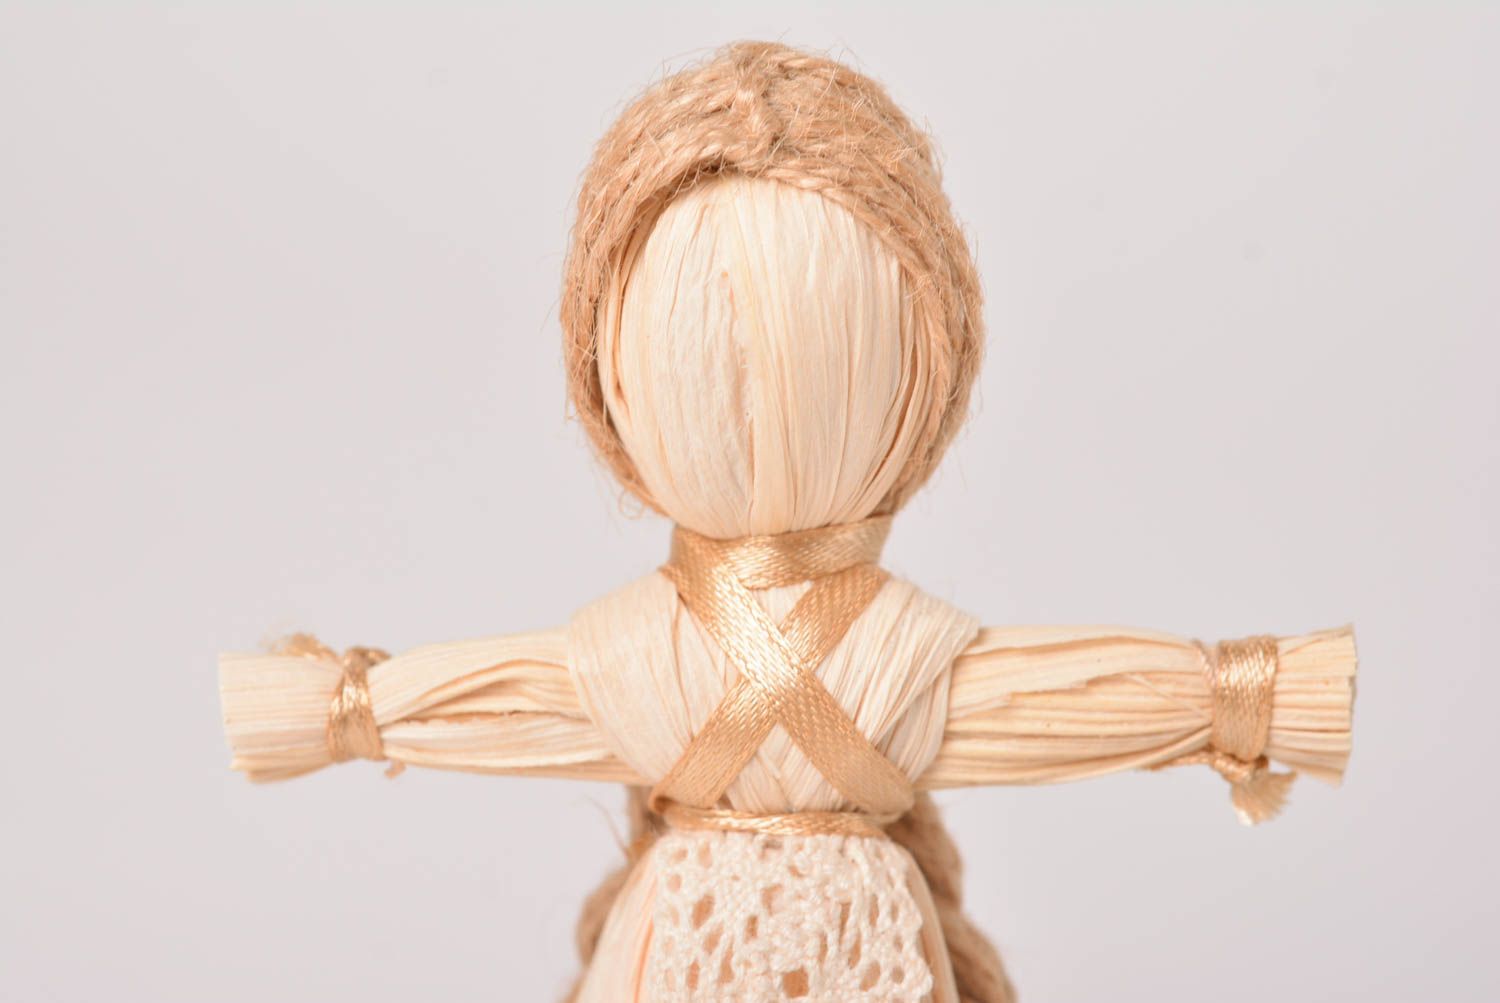 Игрушка из соломы хэнд мэйд славянский оберег кукла из соломы Панночка фото 4